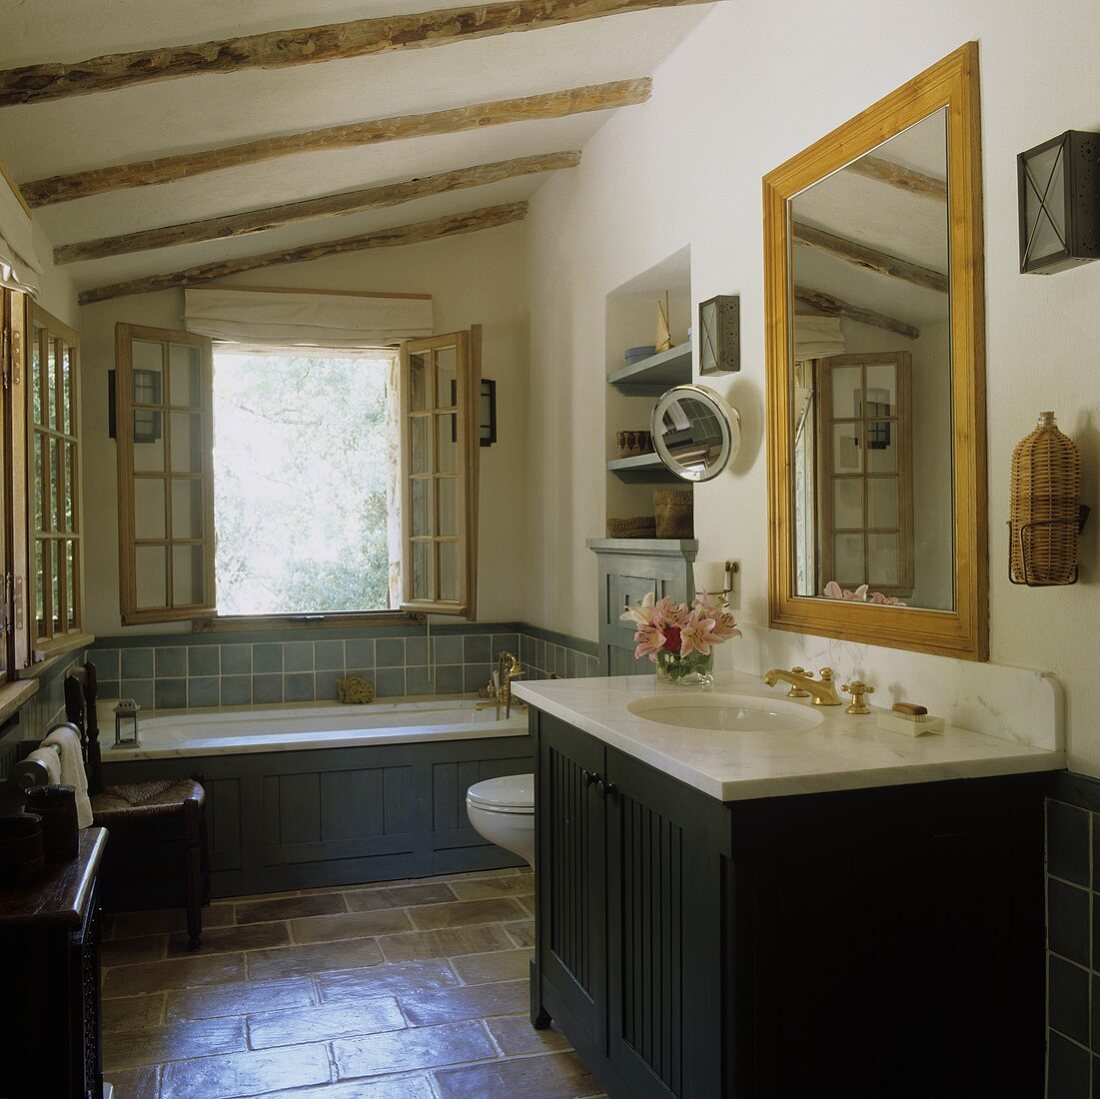 Landhausbad mit Terrakottaboden - dunkle Holzverkleidung am Waschtisch und Badewanne vor geöffnetem Fenster